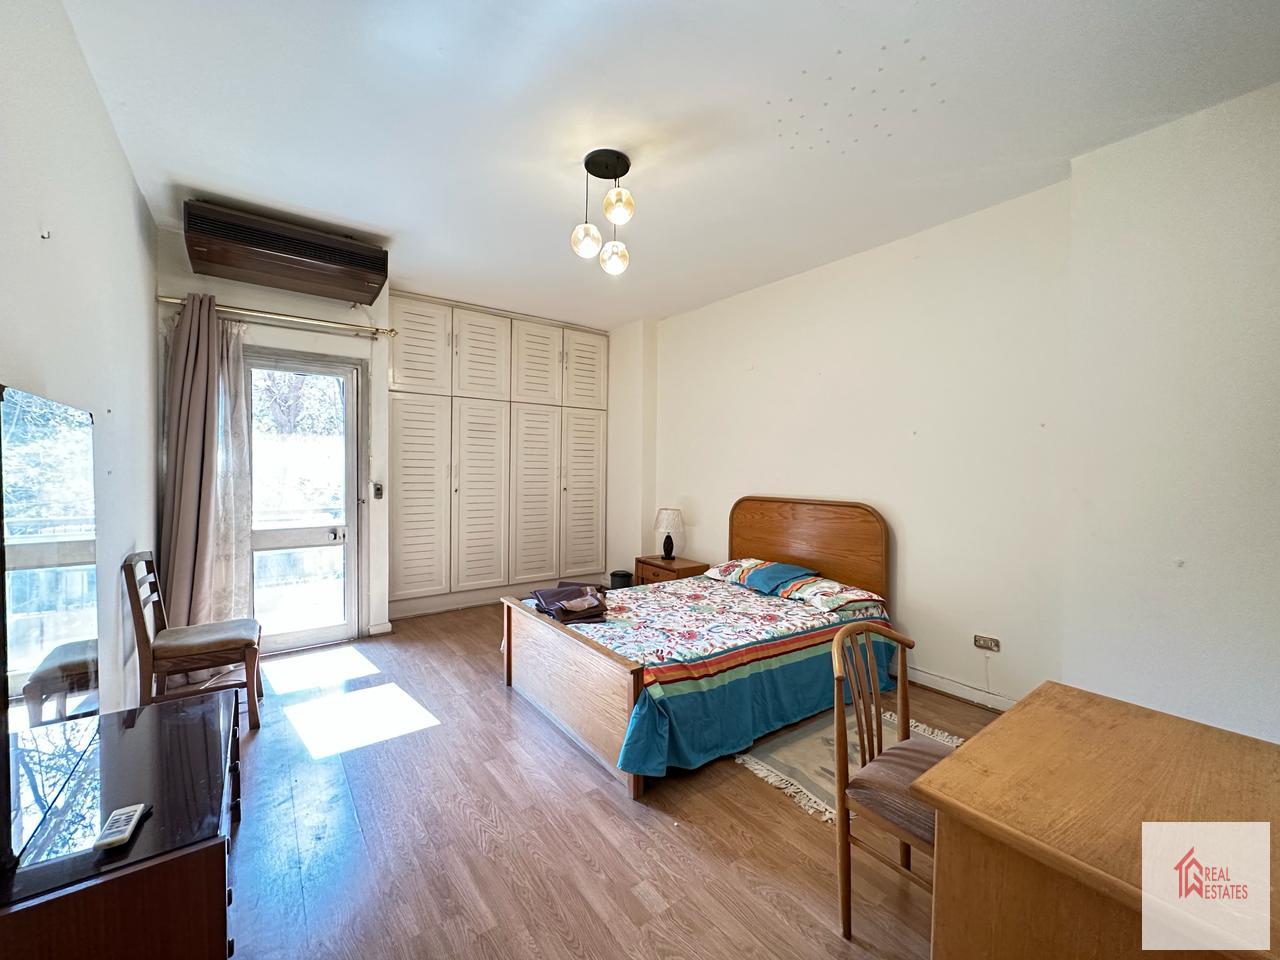 Wohnung zu vermieten in Maadi Sarayat, Kairo, Ägypten, 3 Schlafzimmer, 2 Badezimmer, 1 Hauptschlafzimmer, möblierter Balkon.